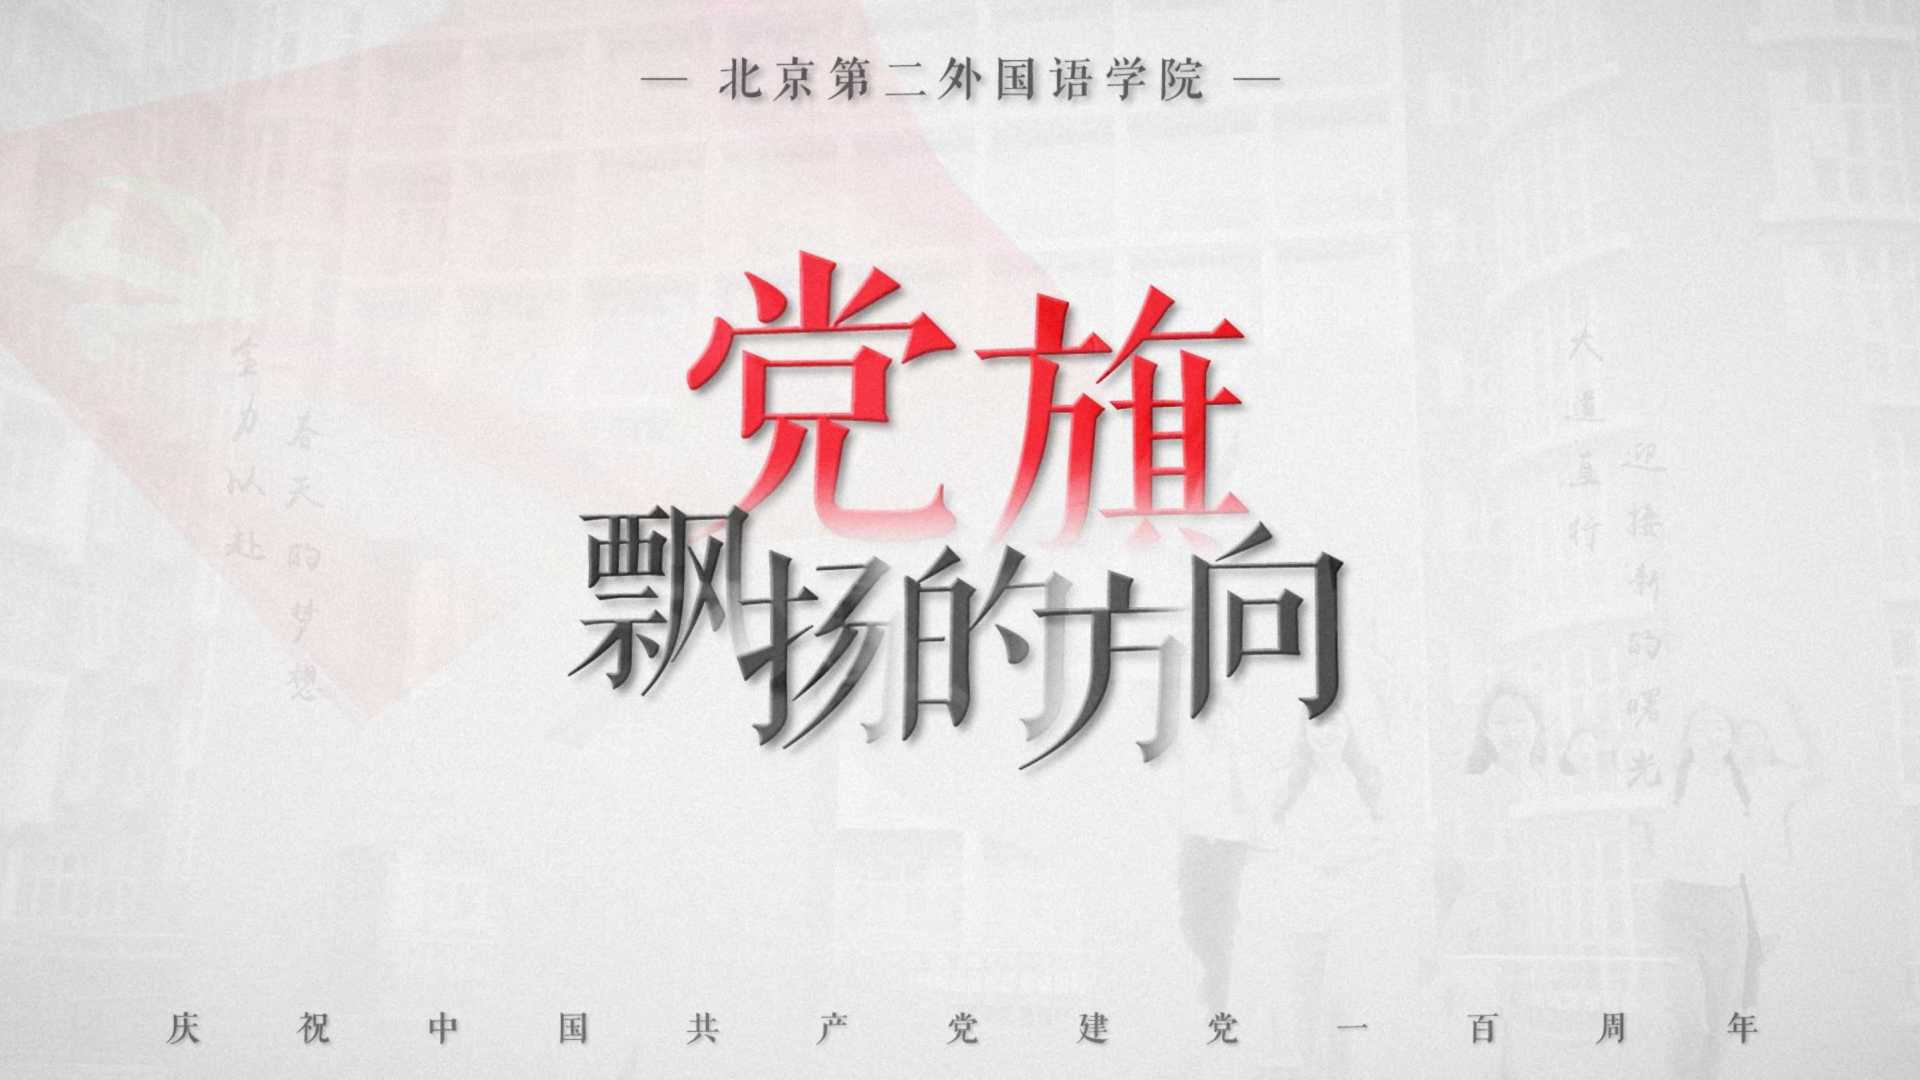 北京第二外国语学院_党旗飘扬的方向MV特供版